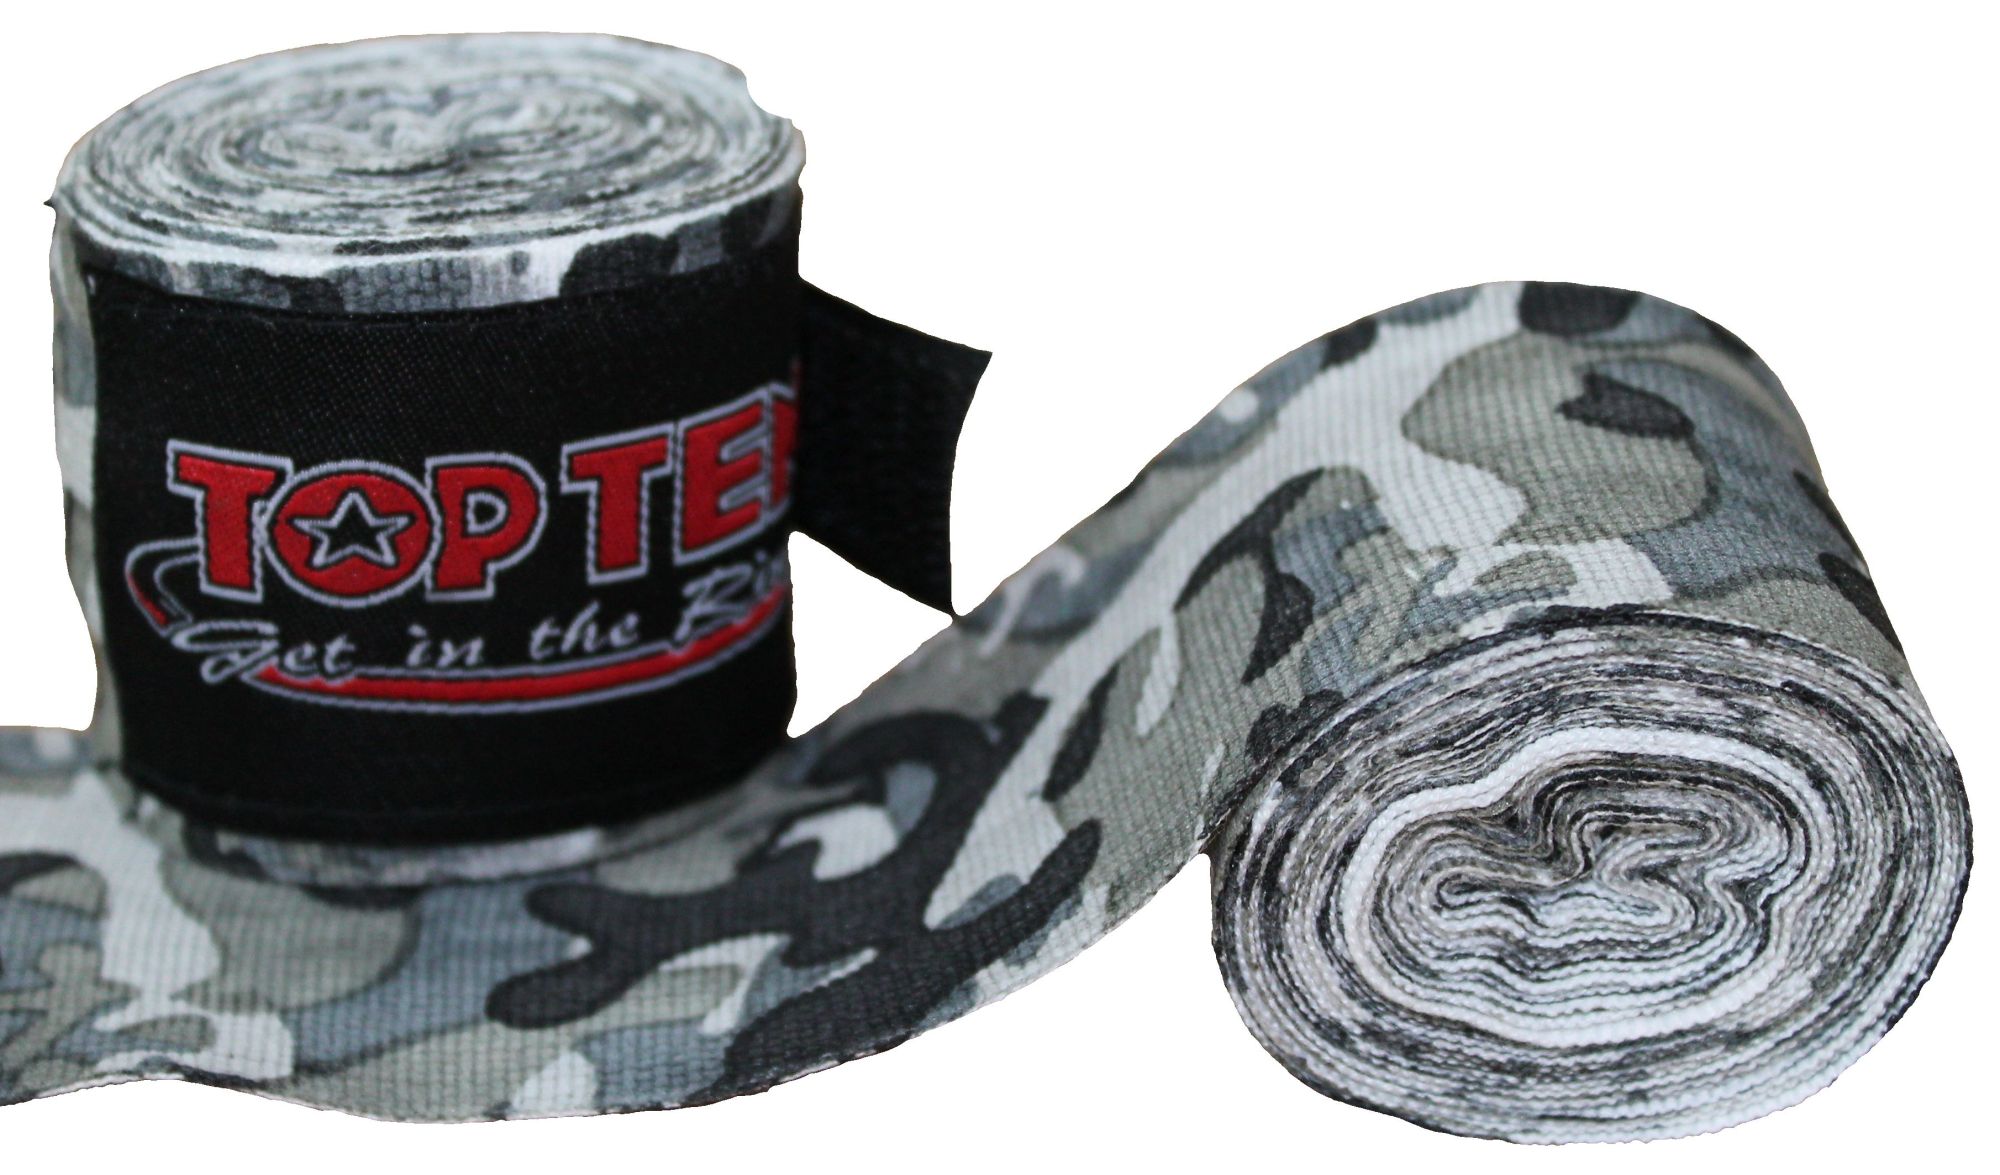 TOP TEN Boksbandage  boxing bandage elastic “Camouflage” Groen - Grijs